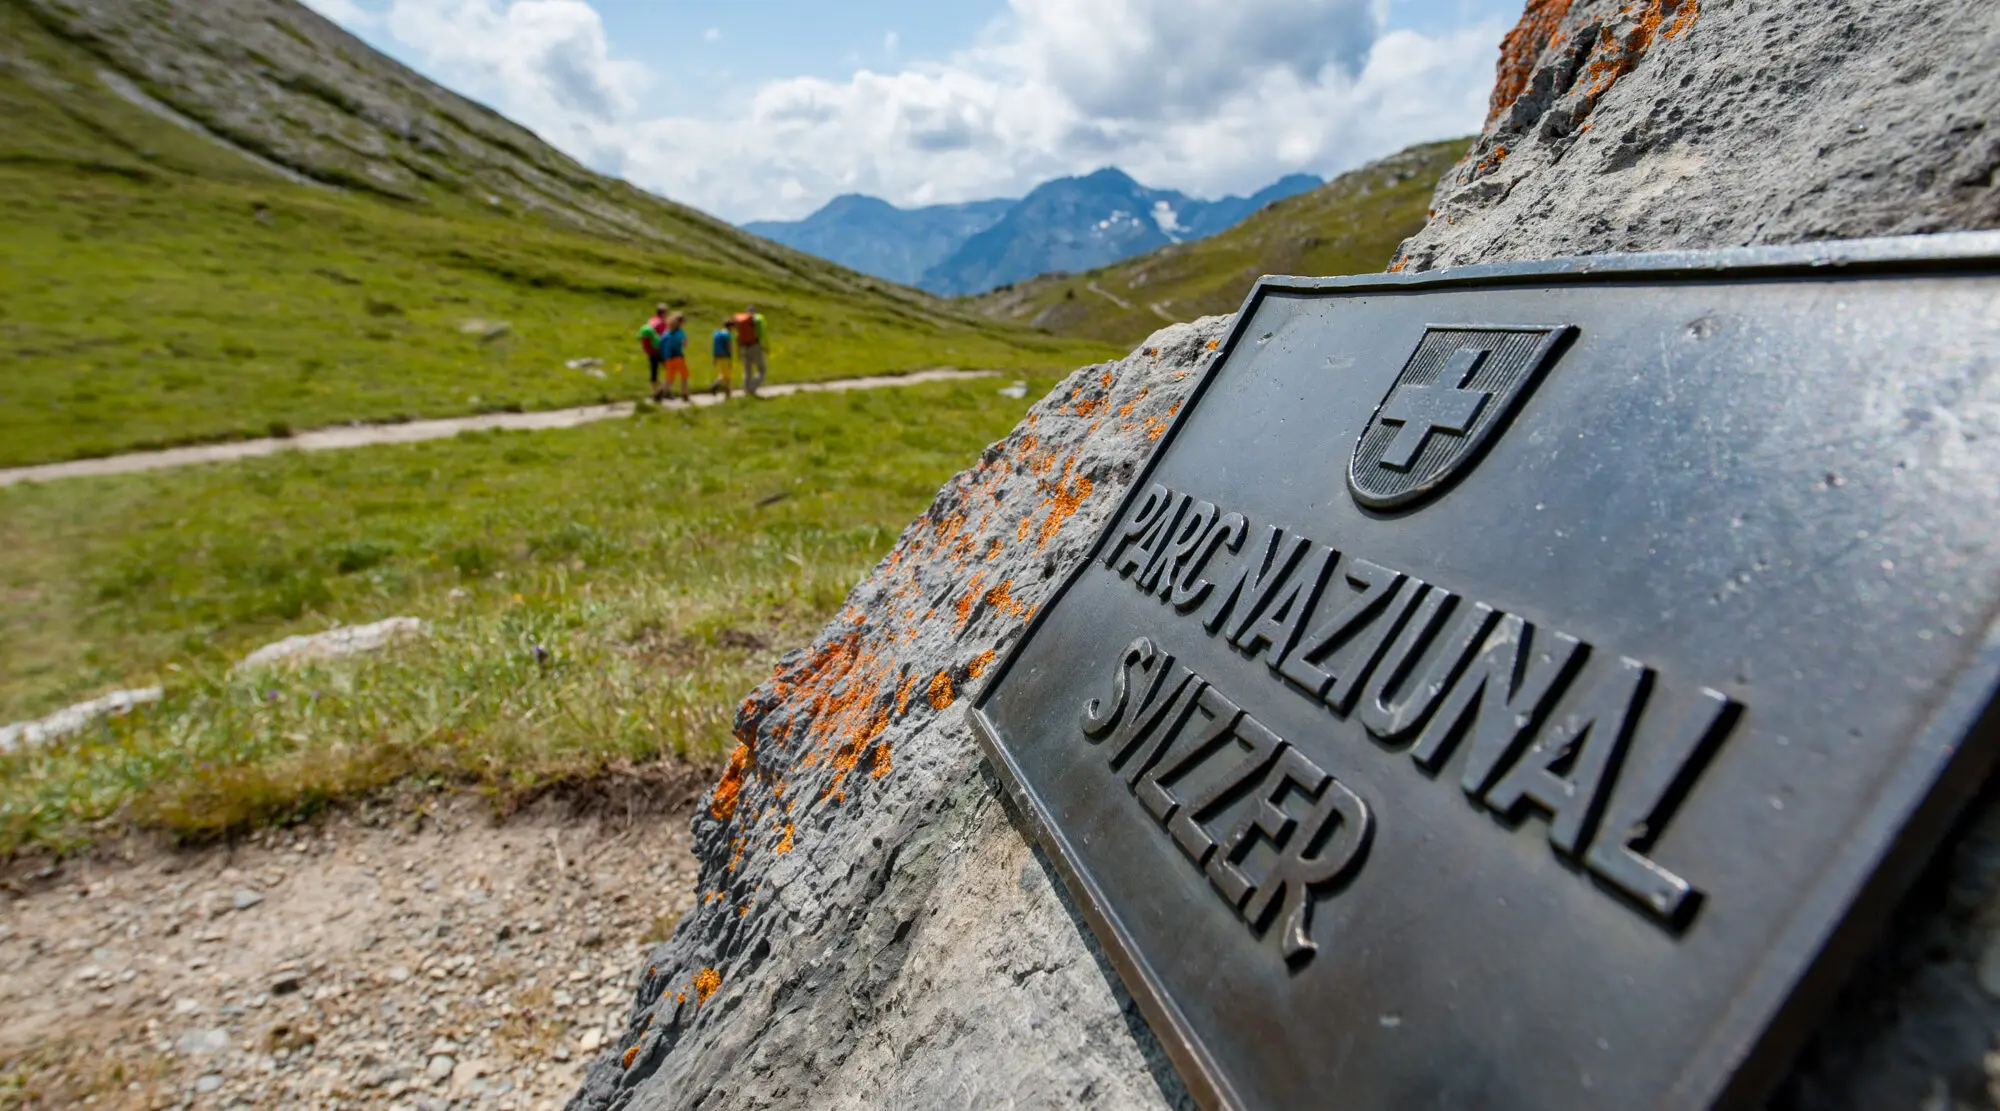 Metallschild Parc naziunal svizzer auf Steinbrocken am Wanderweg